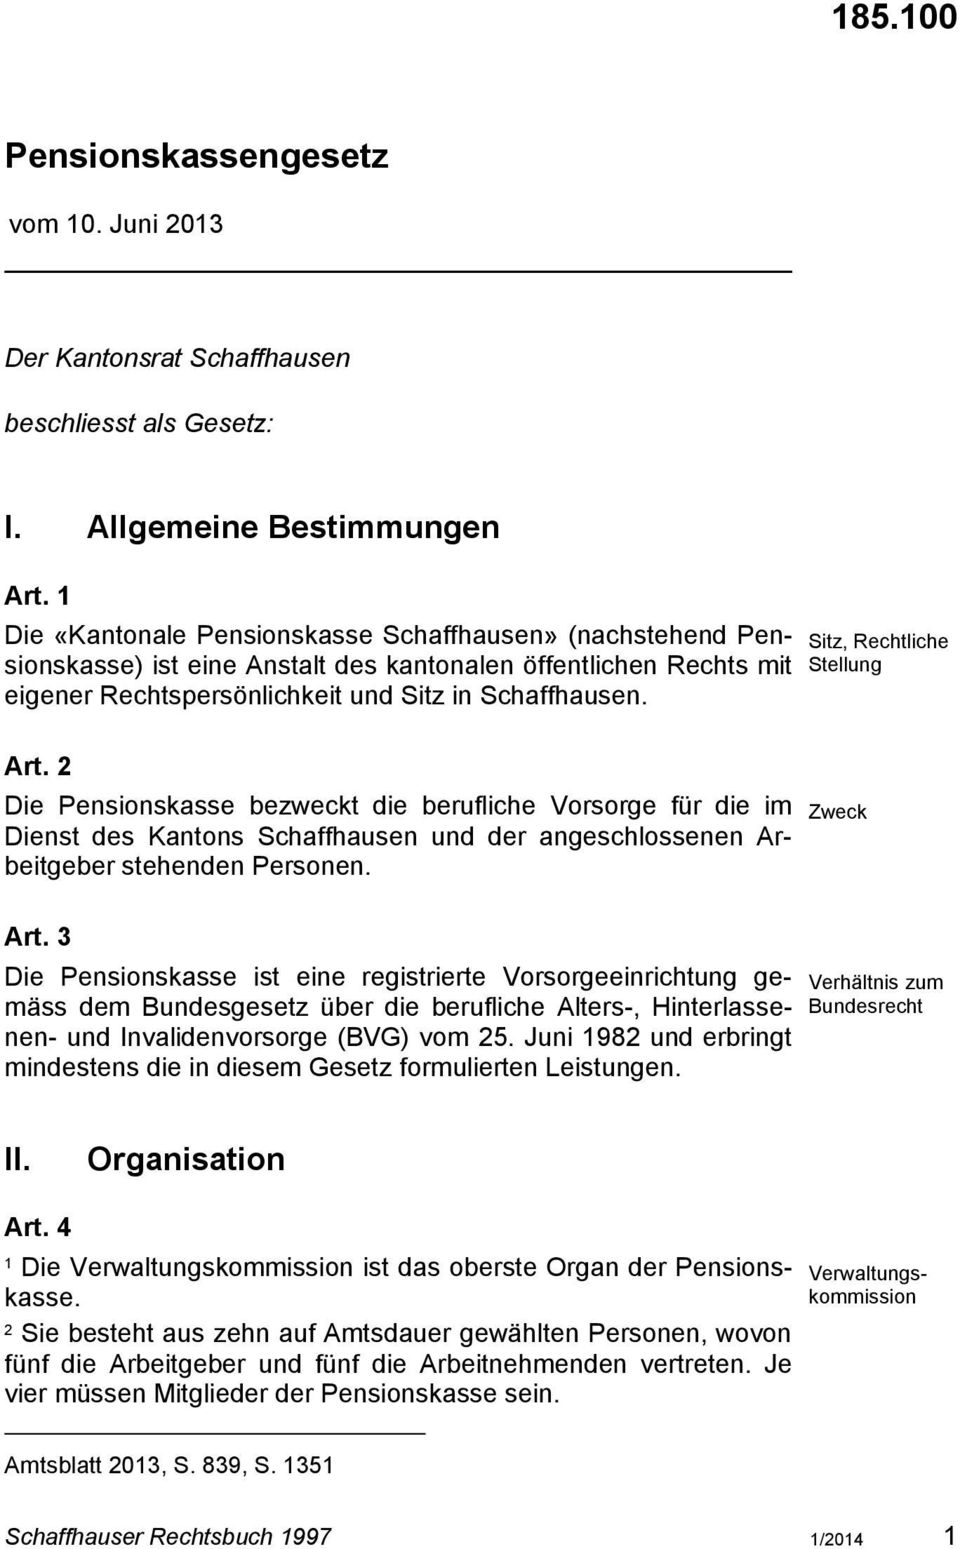 Die Pensionskasse bezweckt die berufliche Vorsorge für die im Dienst des Kantons Schaffhausen und der angeschlossenen Arbeitgeber stehenden Personen. Art.